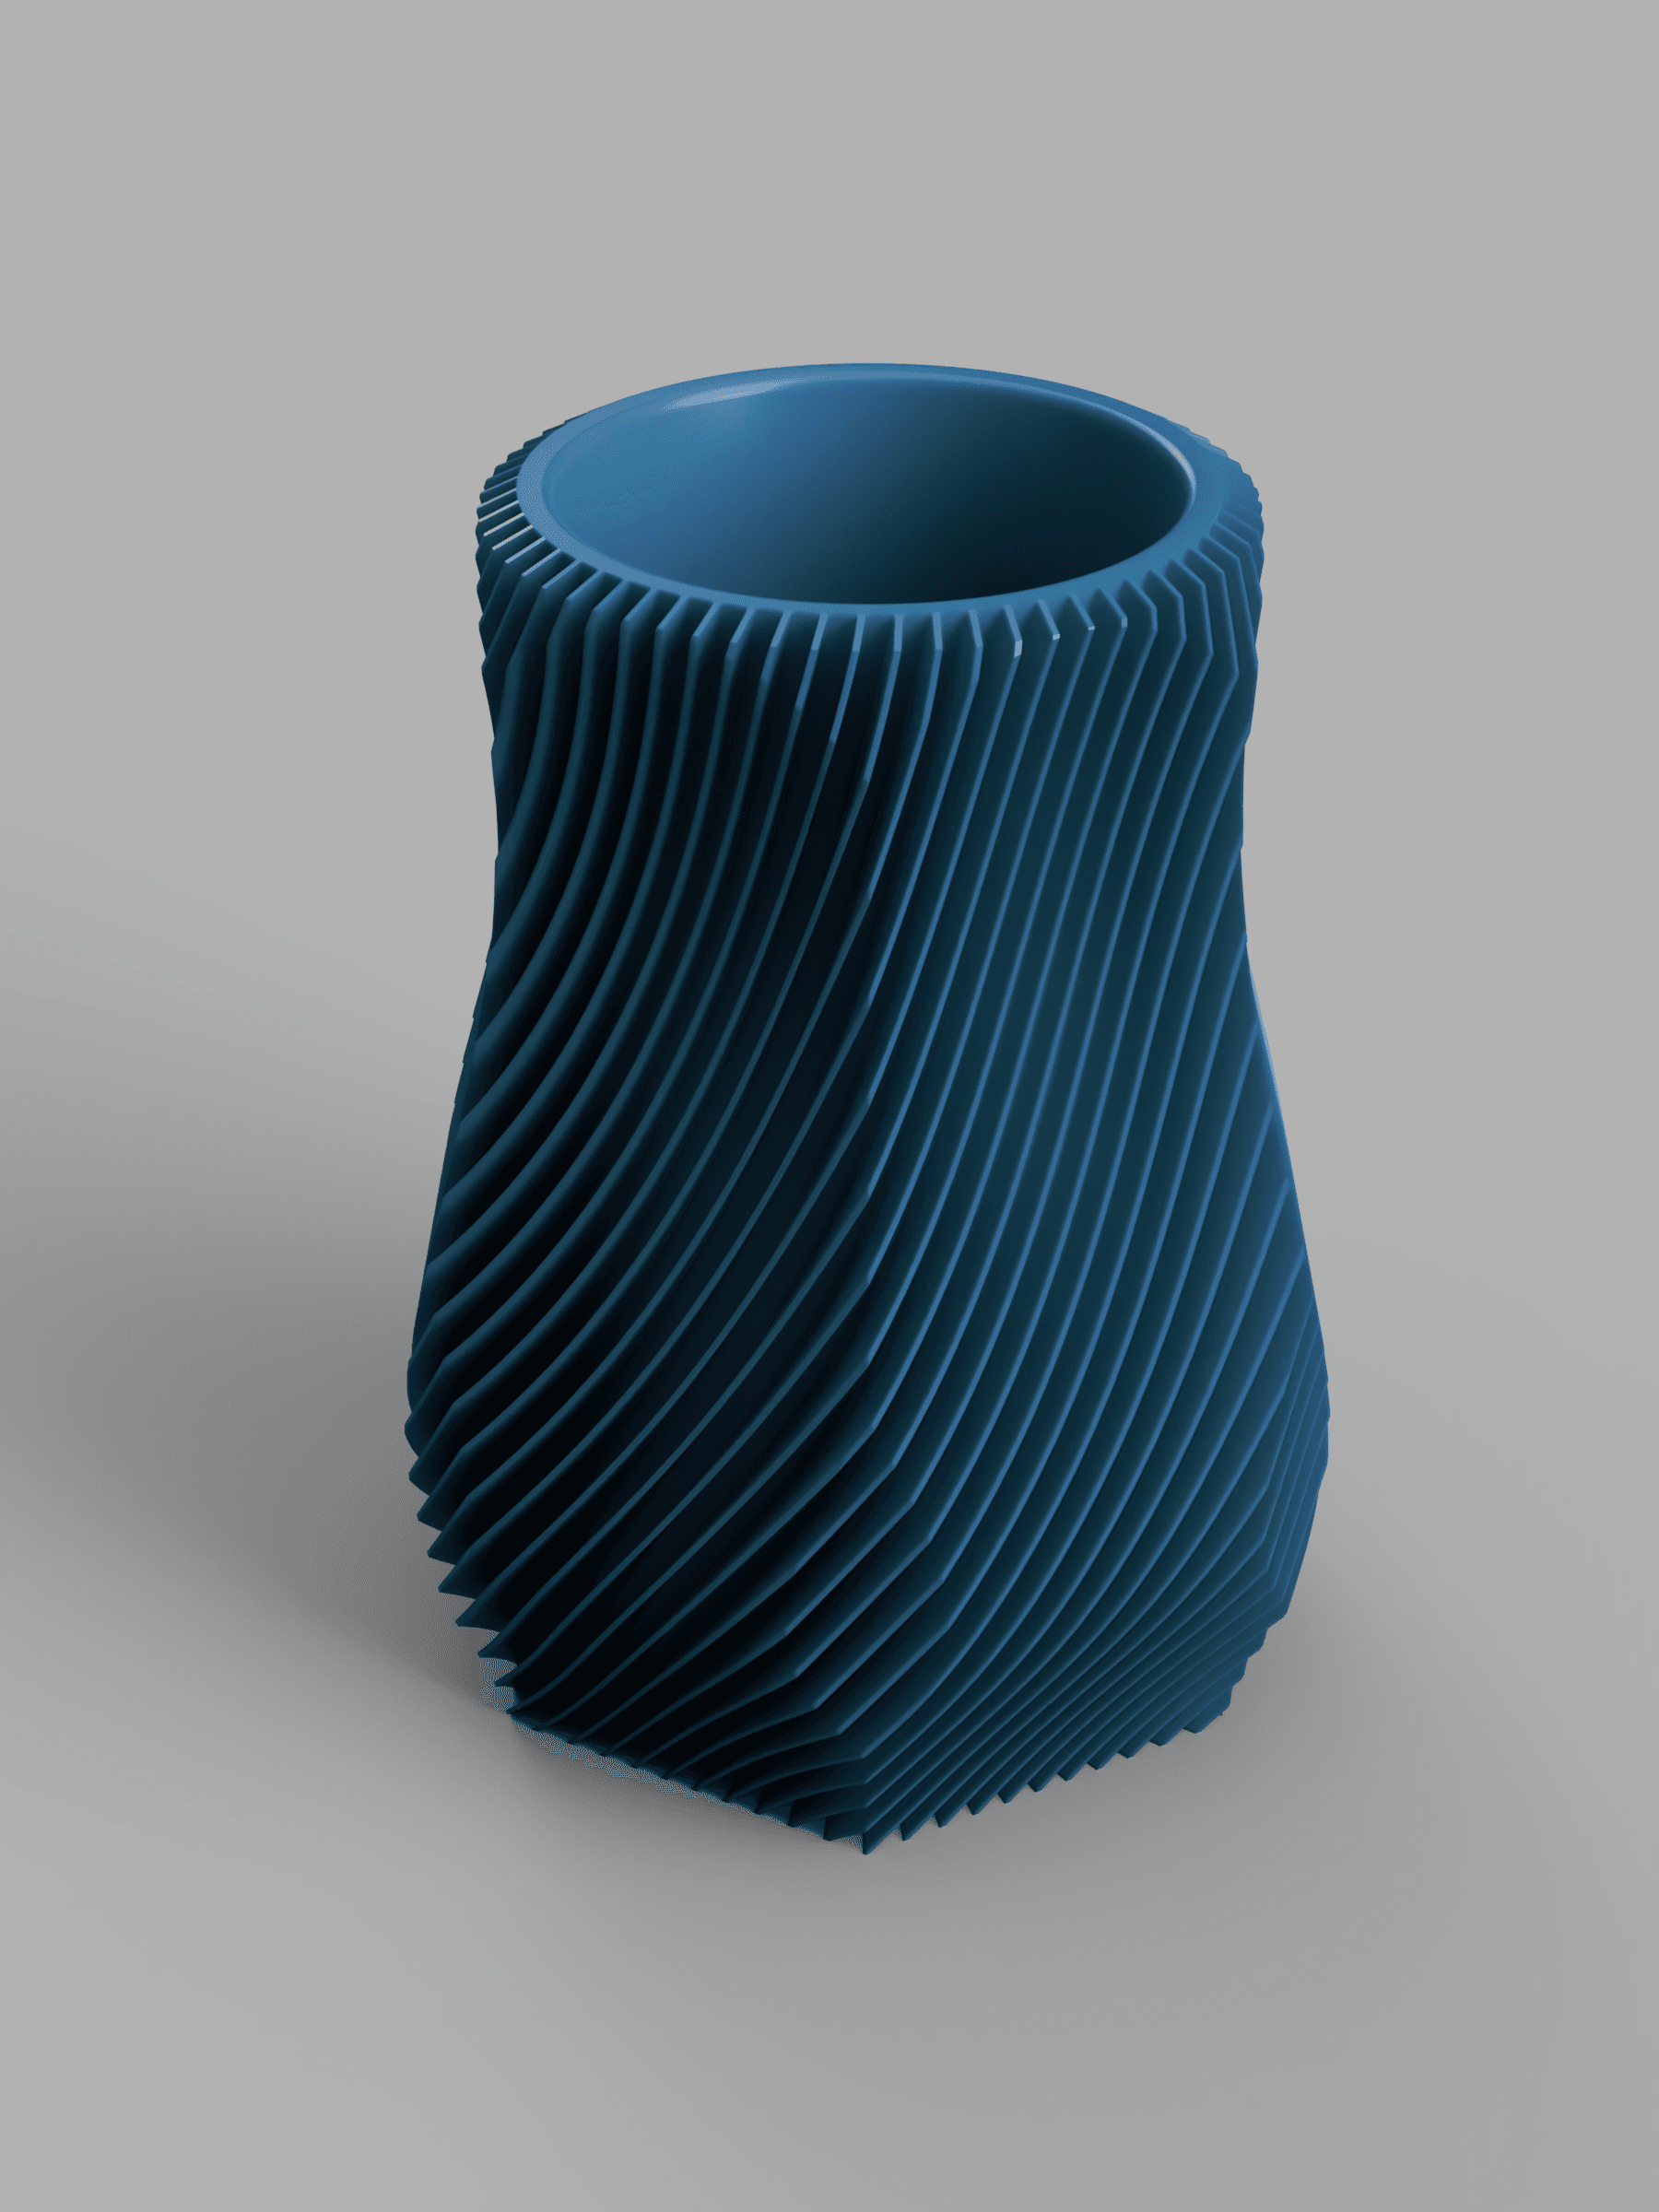 Geometric Finned Vase 3d model